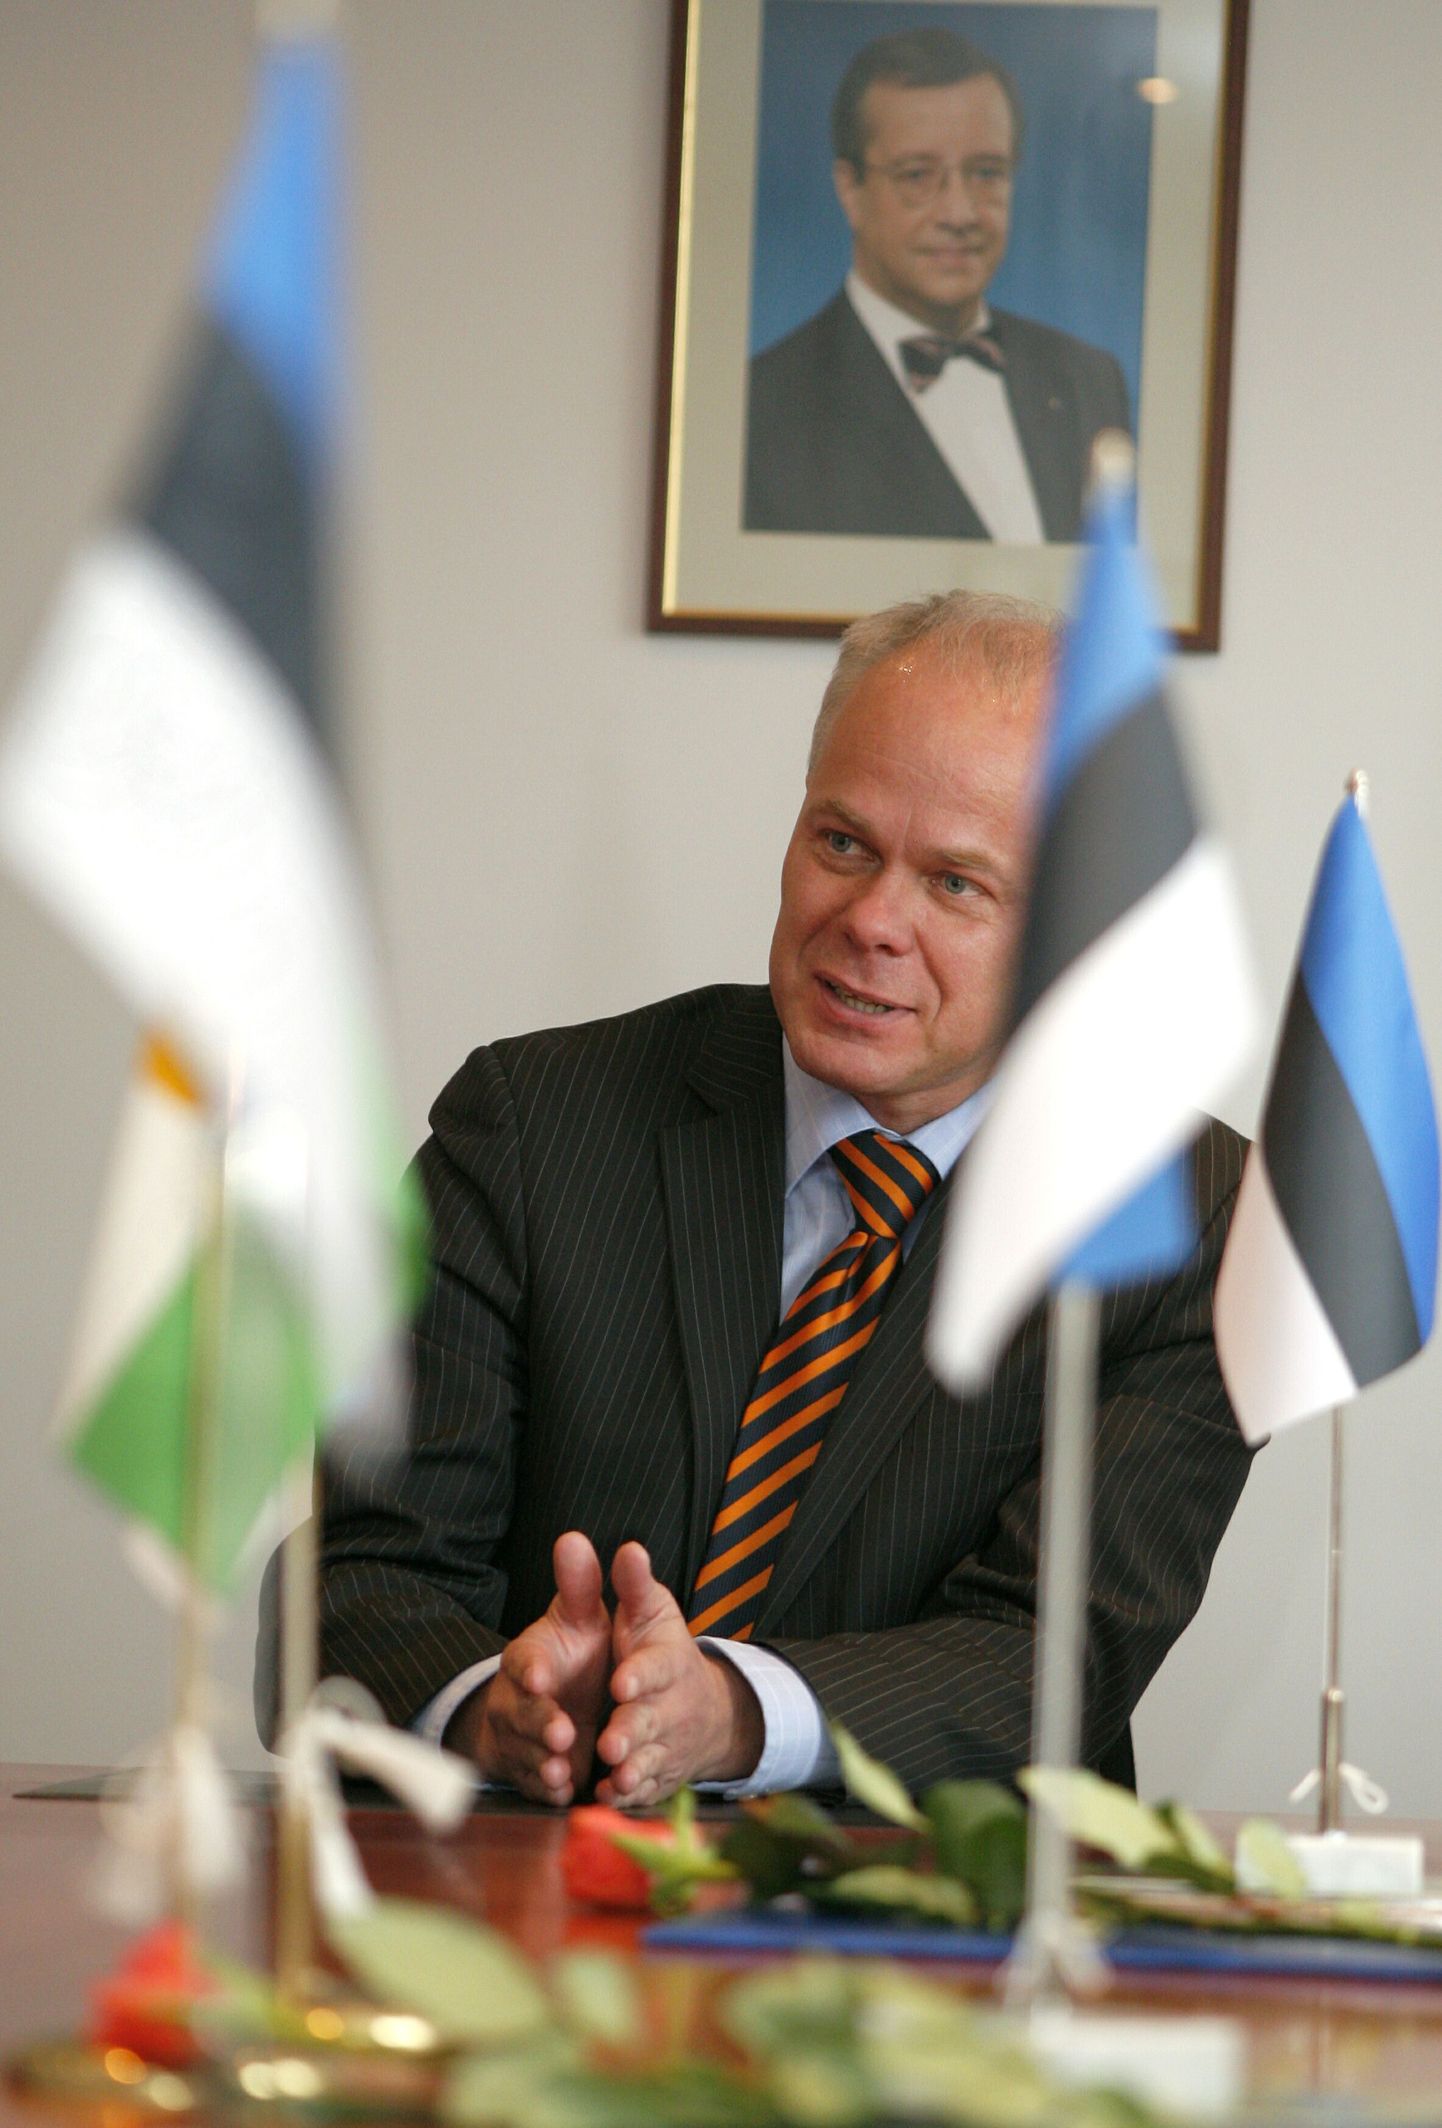 Pärnu maavanem Toomas Kivimägi teatas, et kandideerib sügisestel kohalikel valimistel Pärnu linnapeaks ja läheb valimistele valimisliidu eesotsas.